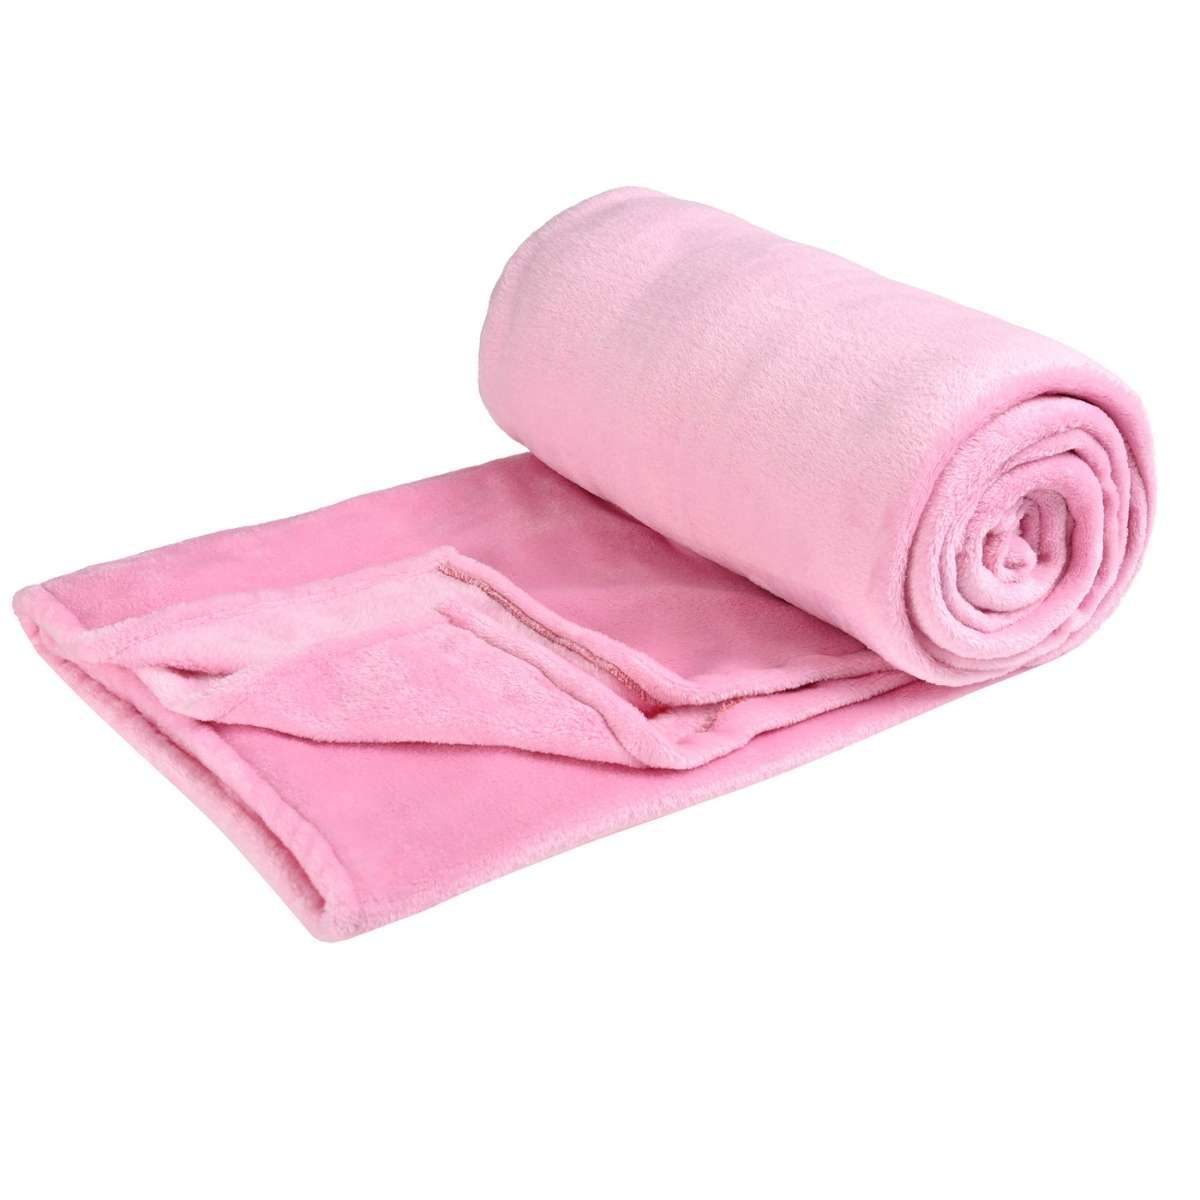 Cobija de flanel color rosa tamaño individual doblada en forma de rollo